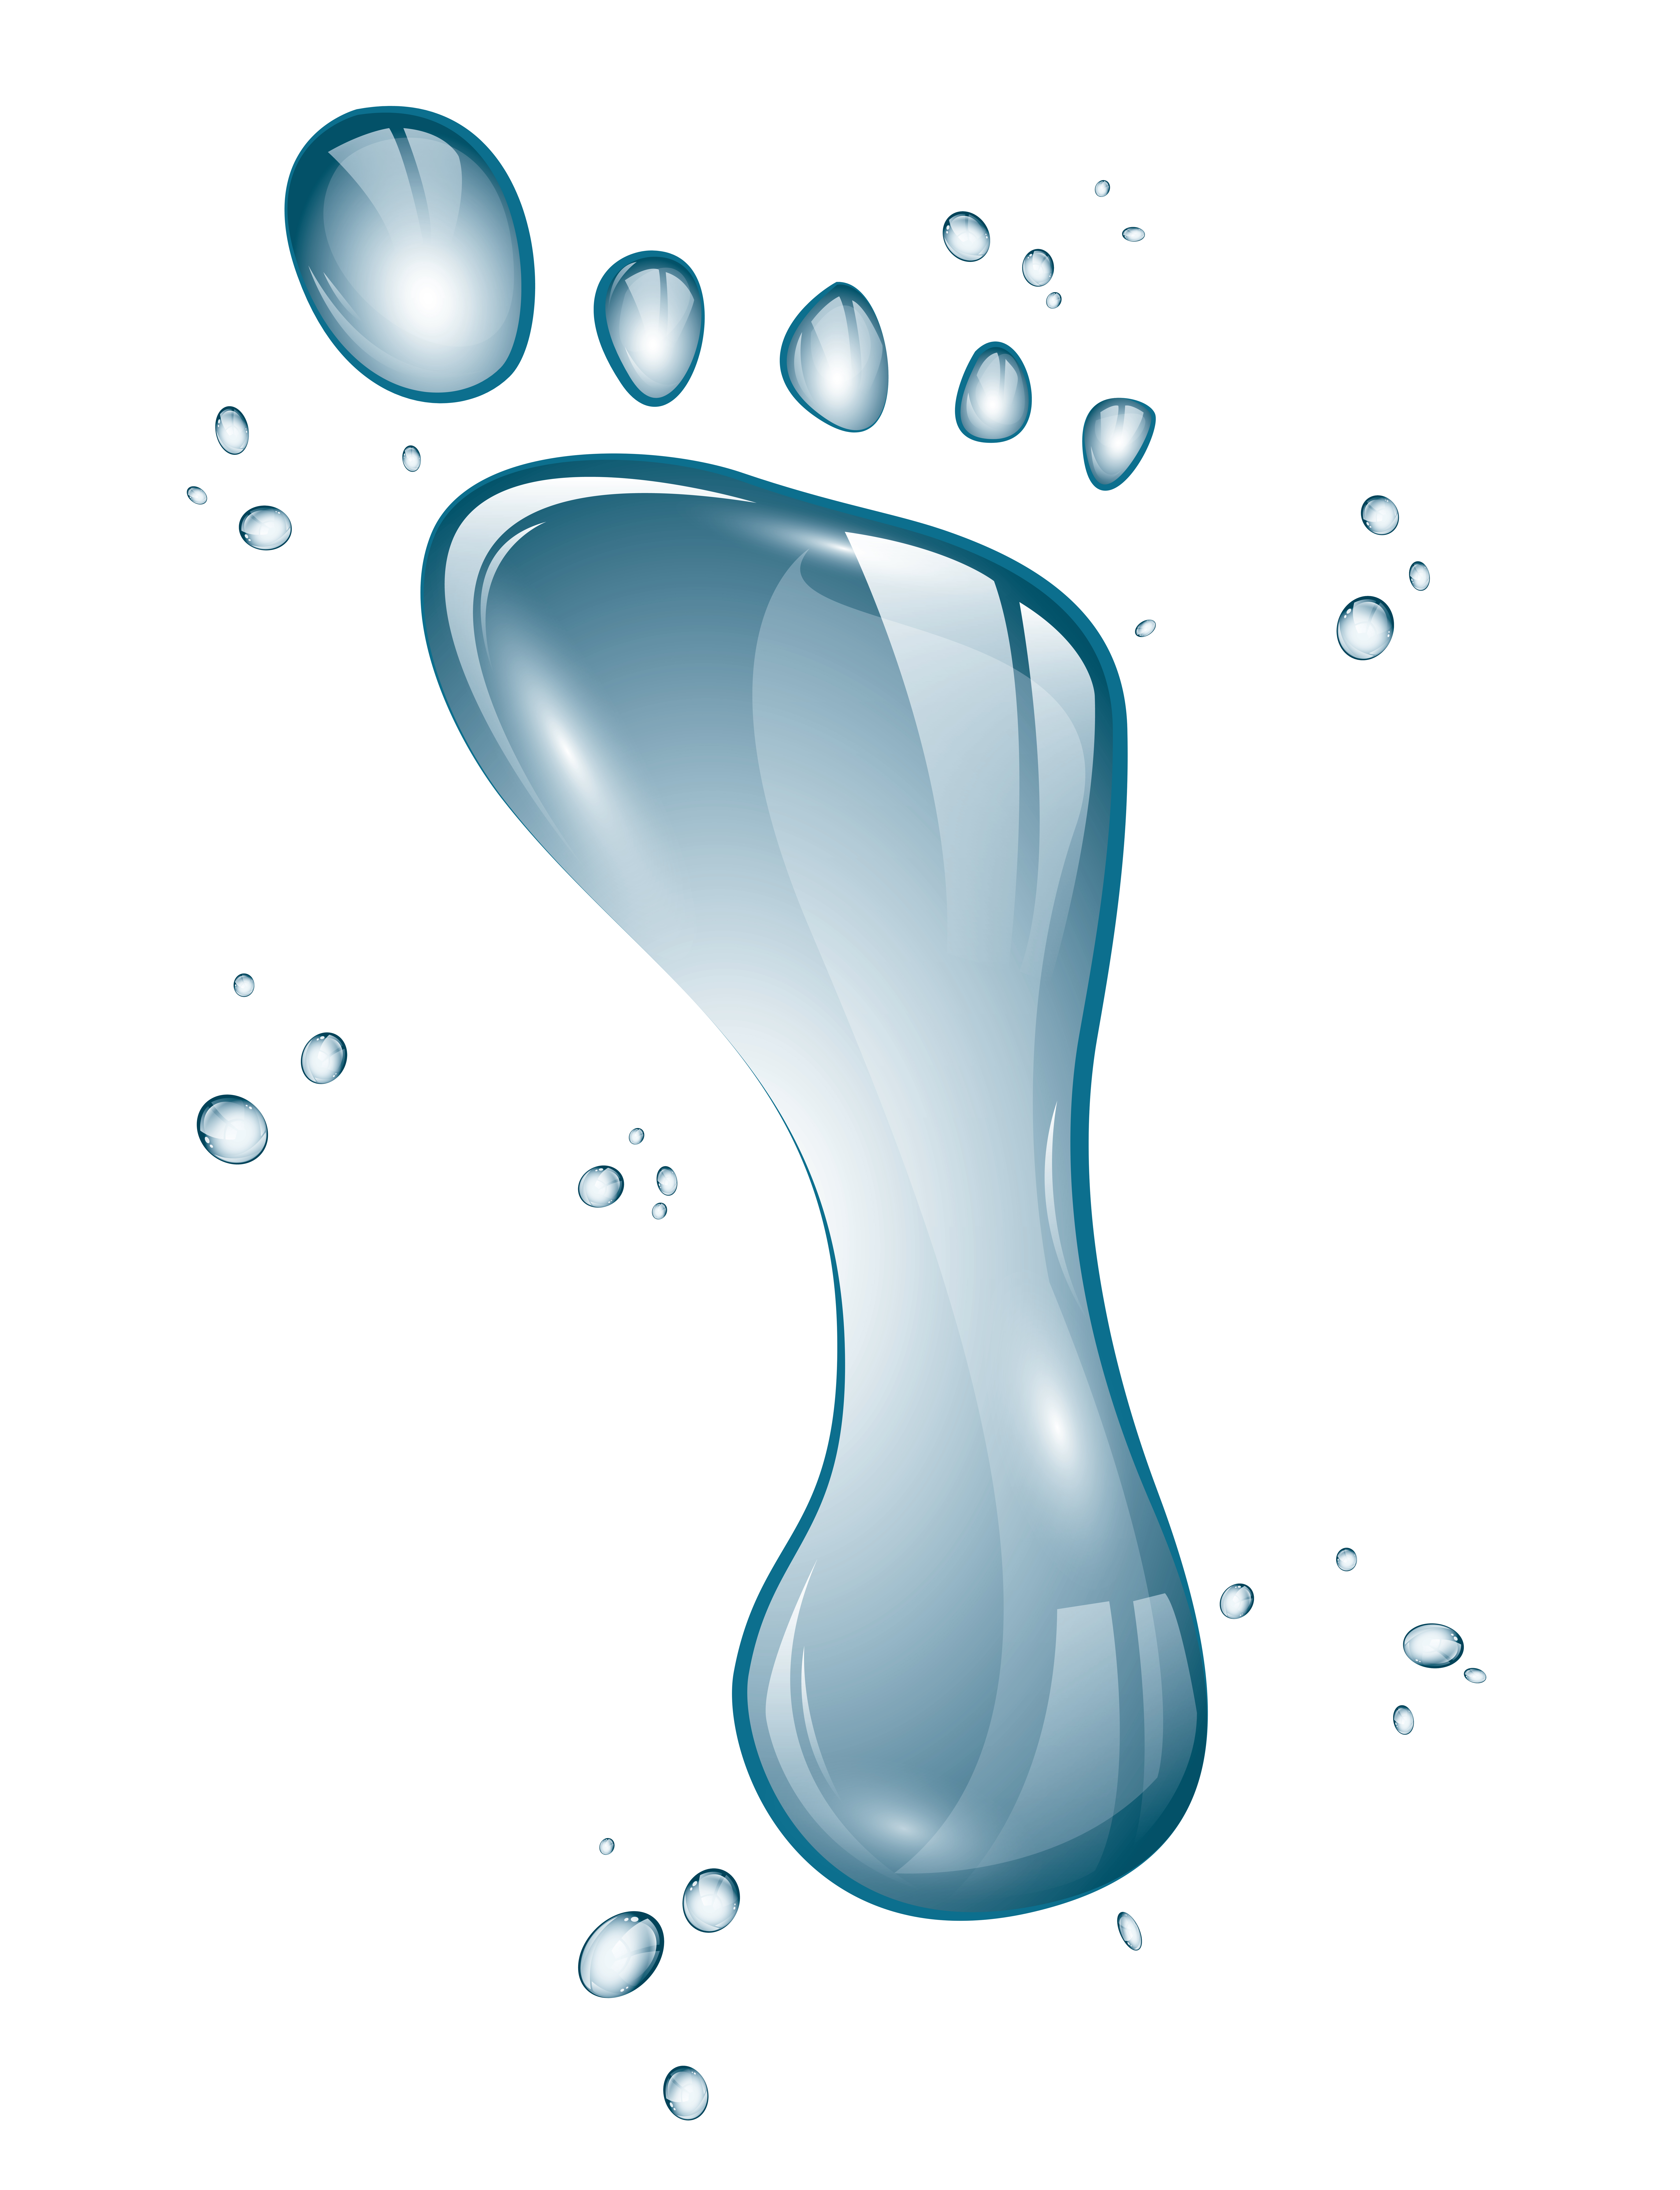 water footprint